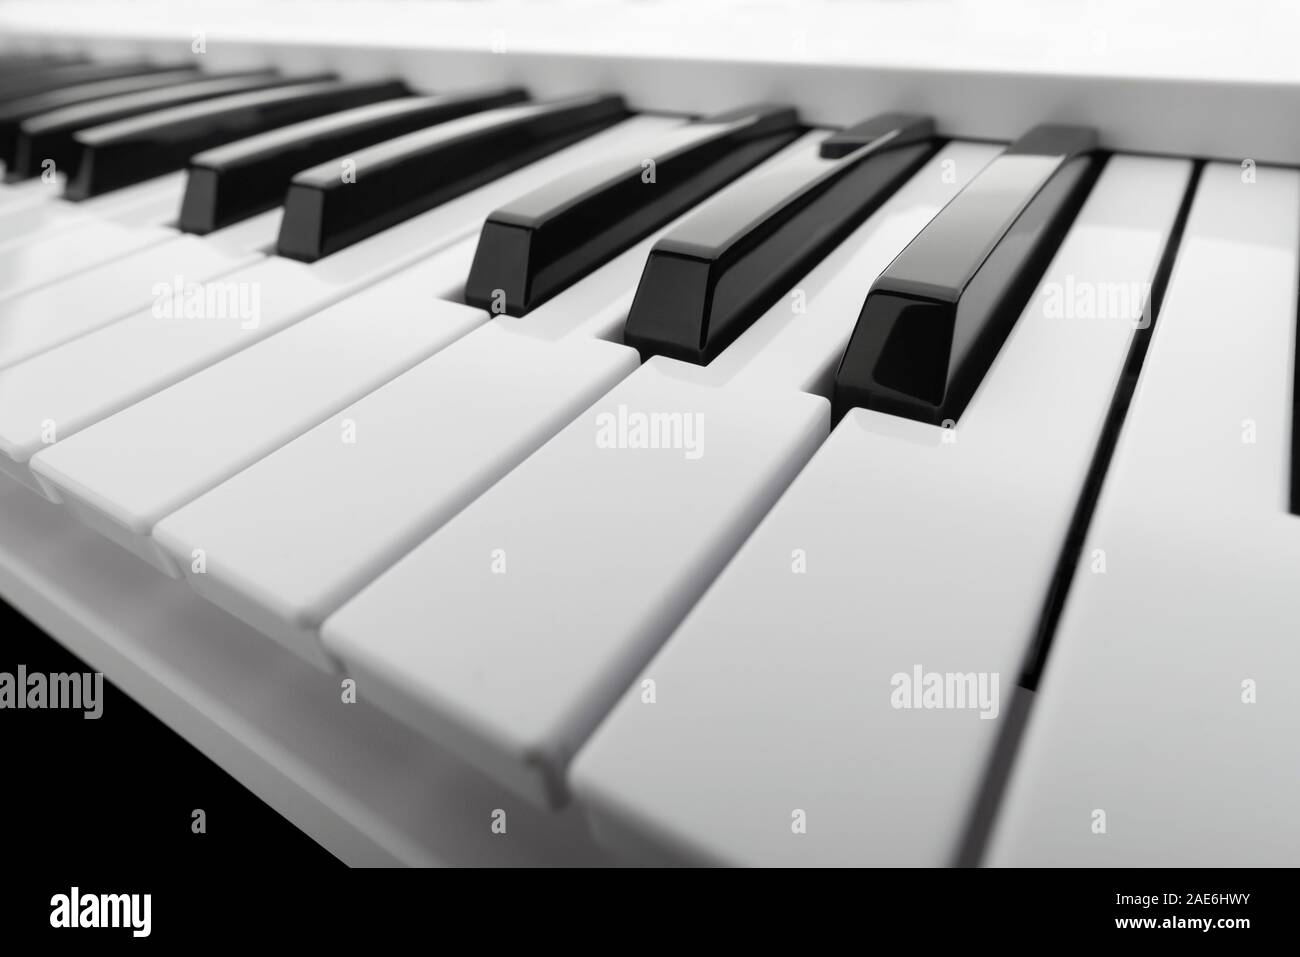 Cerrar detalles sobre el blanco y negro de las teclas de un teclado de música, con copia espacio para el texto Foto de stock